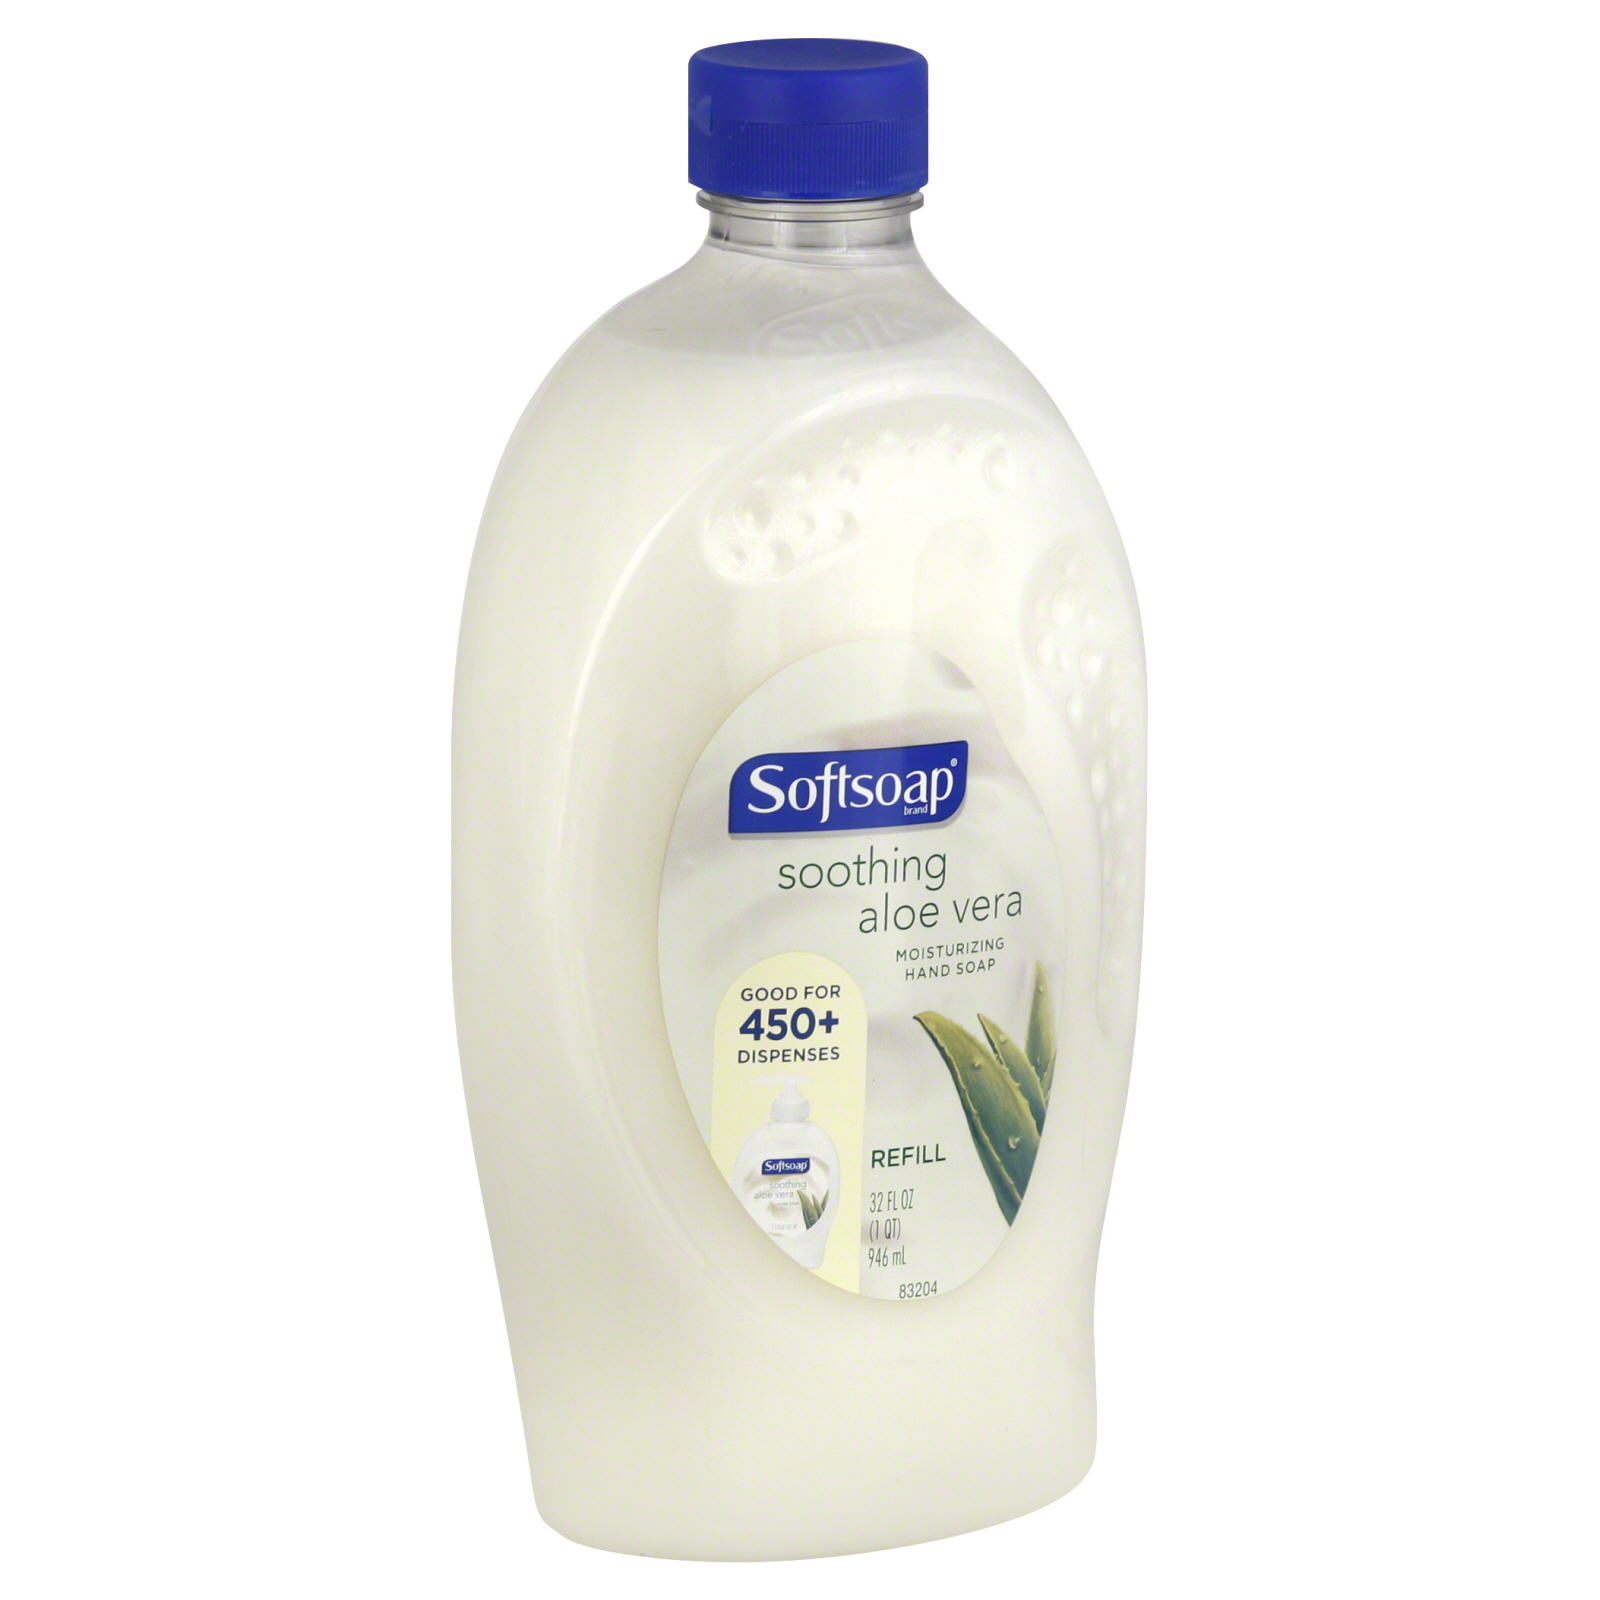 Softsoap Hand Soap, Moisturizing, Refill, Soothing Aloe Vera, 32 oz.